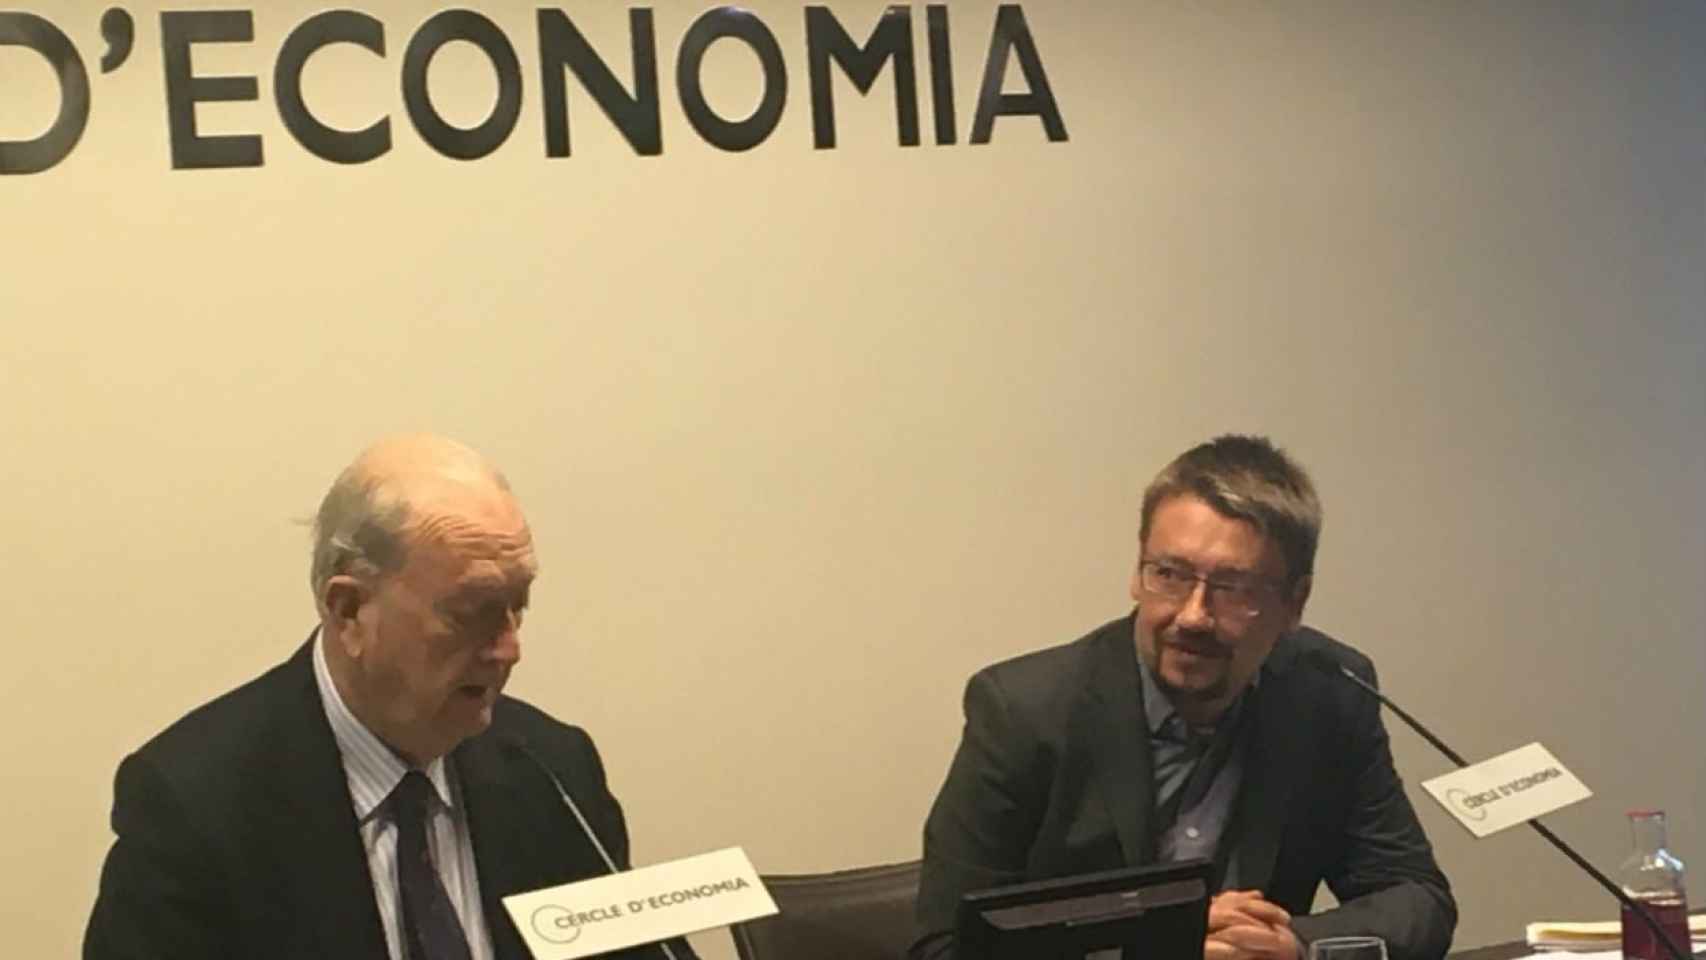 Juan Jose Bruguera, presidente del Cercle d'Economia, y Xavi Domènech / CR